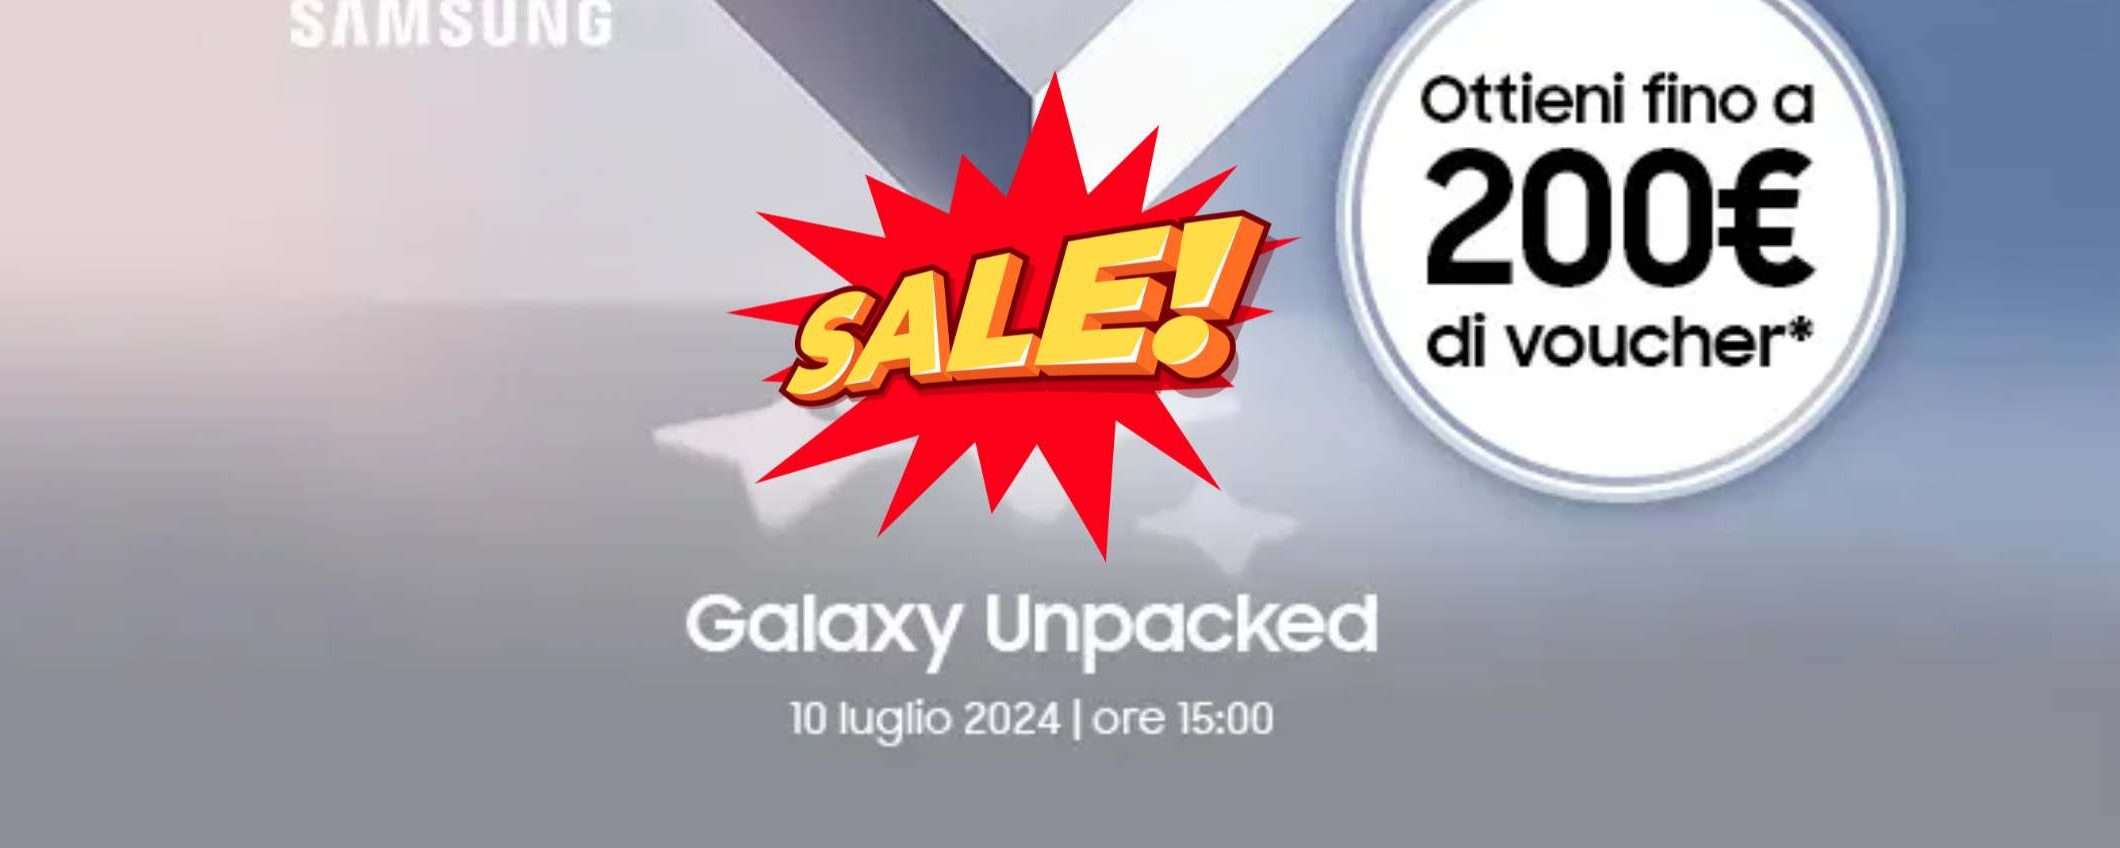 Voucher fino a 200€ per Galaxy Unpacked solo da Mediaworld